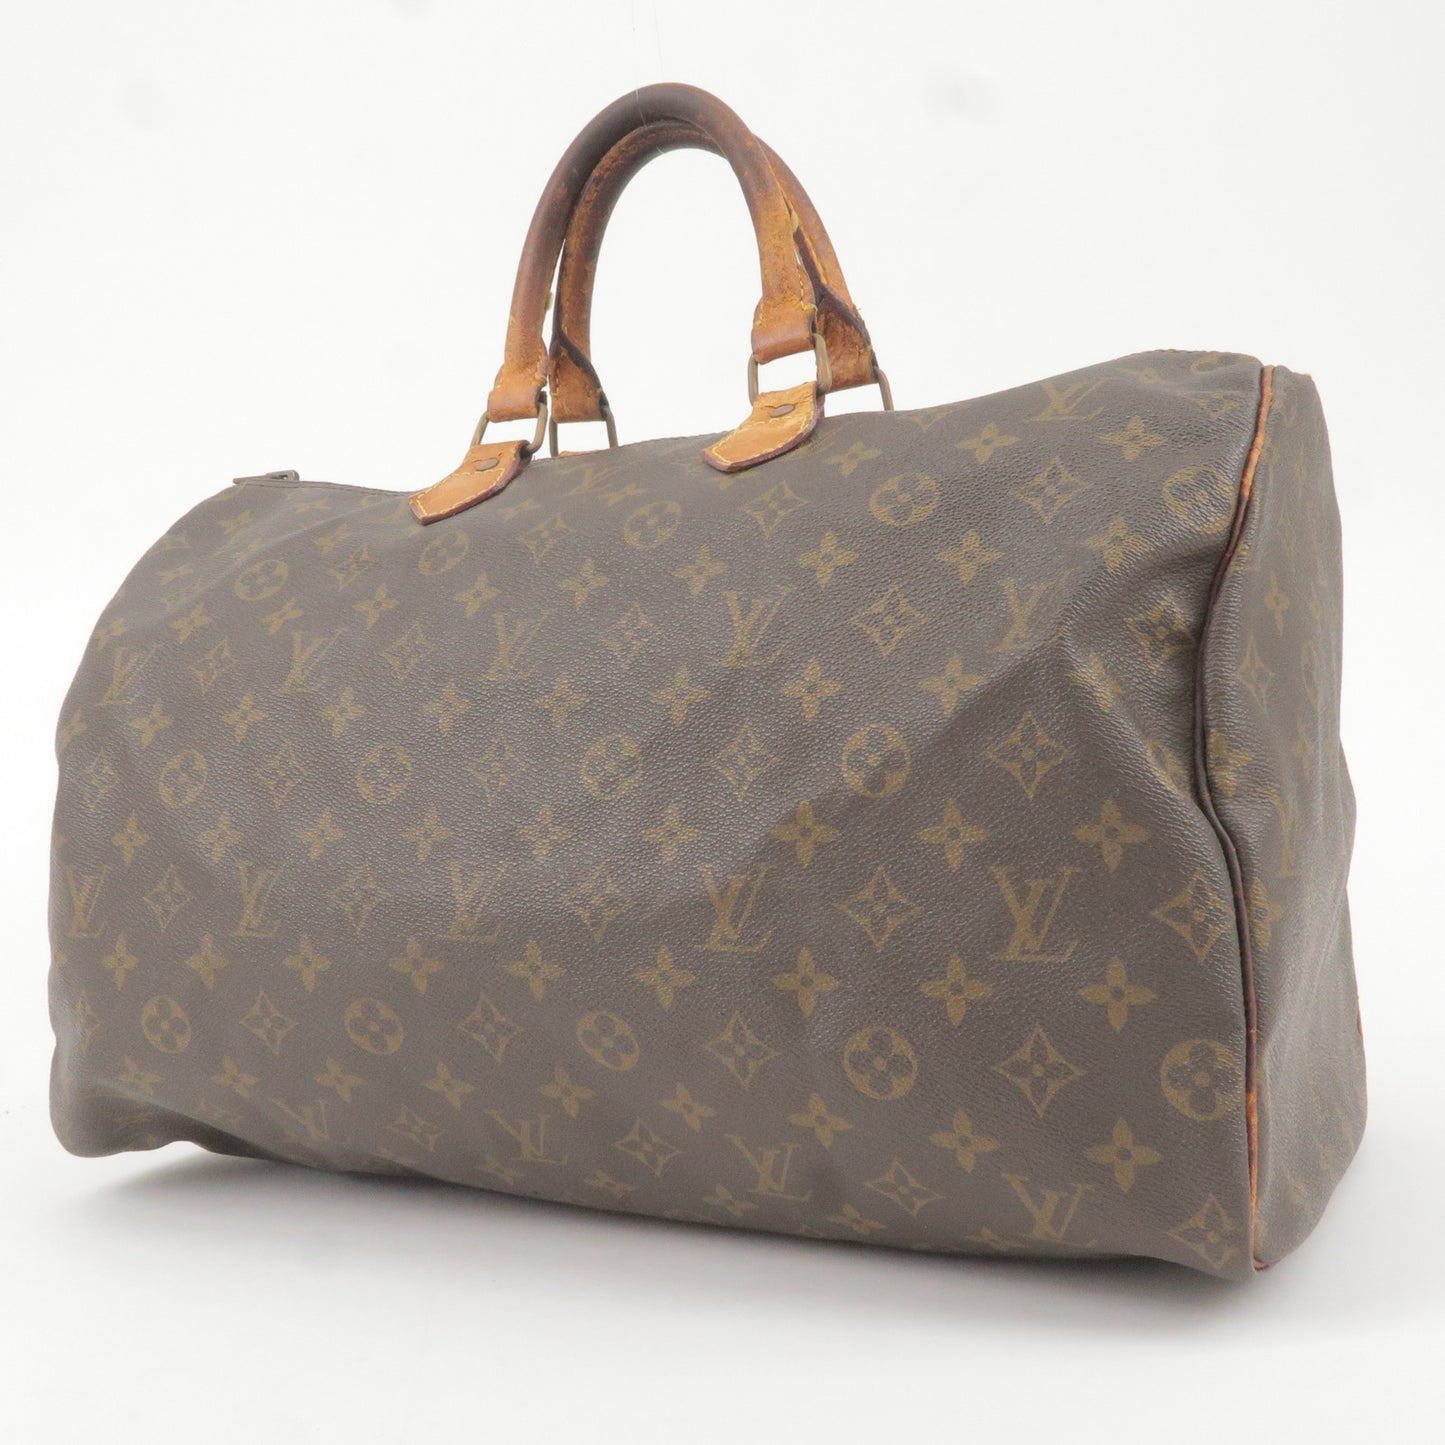 LOUIS VUITTON Louis Vuitton Speedy 40 Boston Bag Monogram M41522